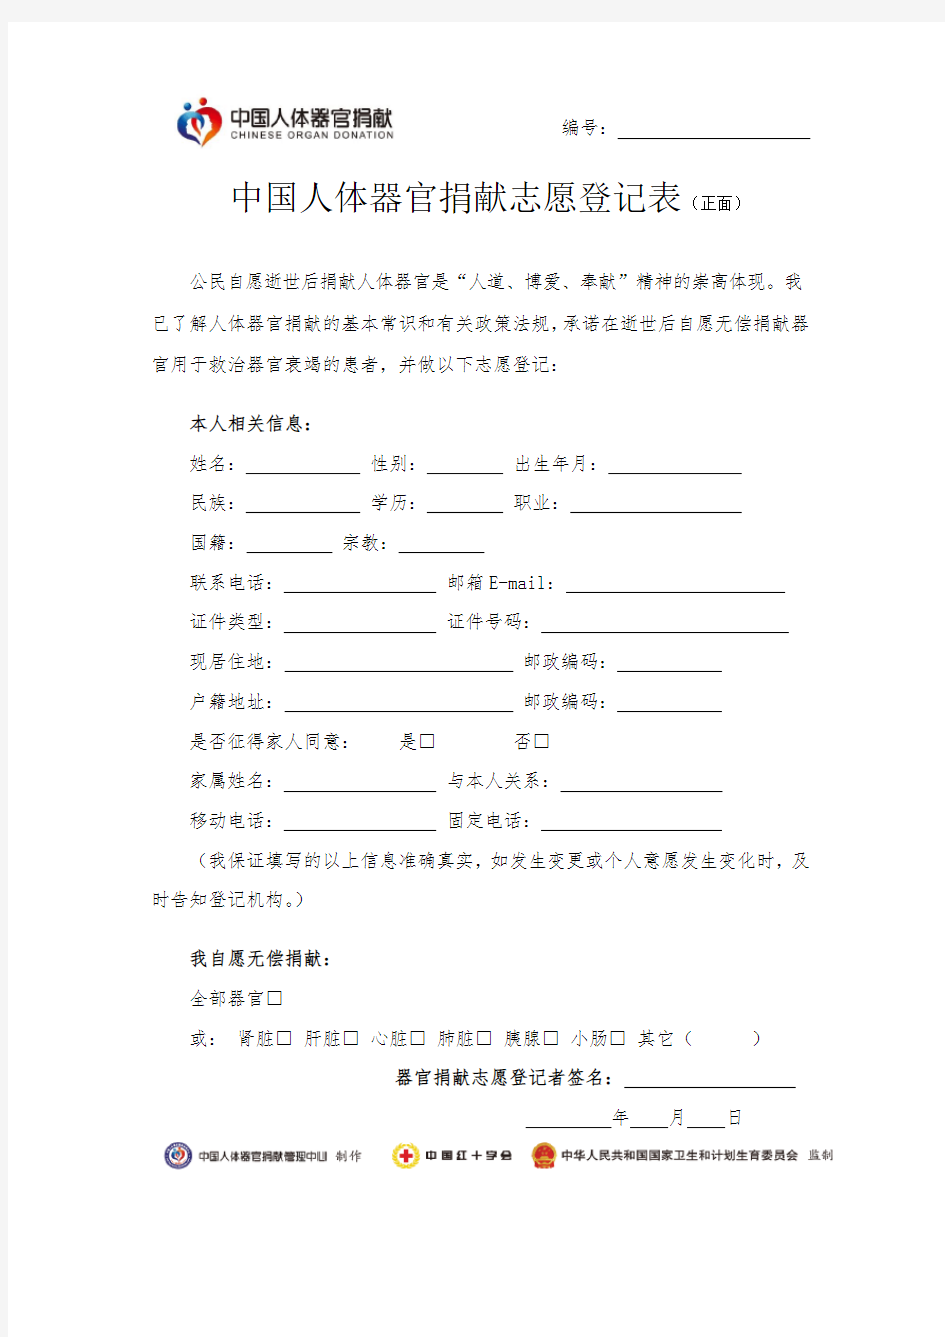 中国人体器官捐献志愿登记表 报名